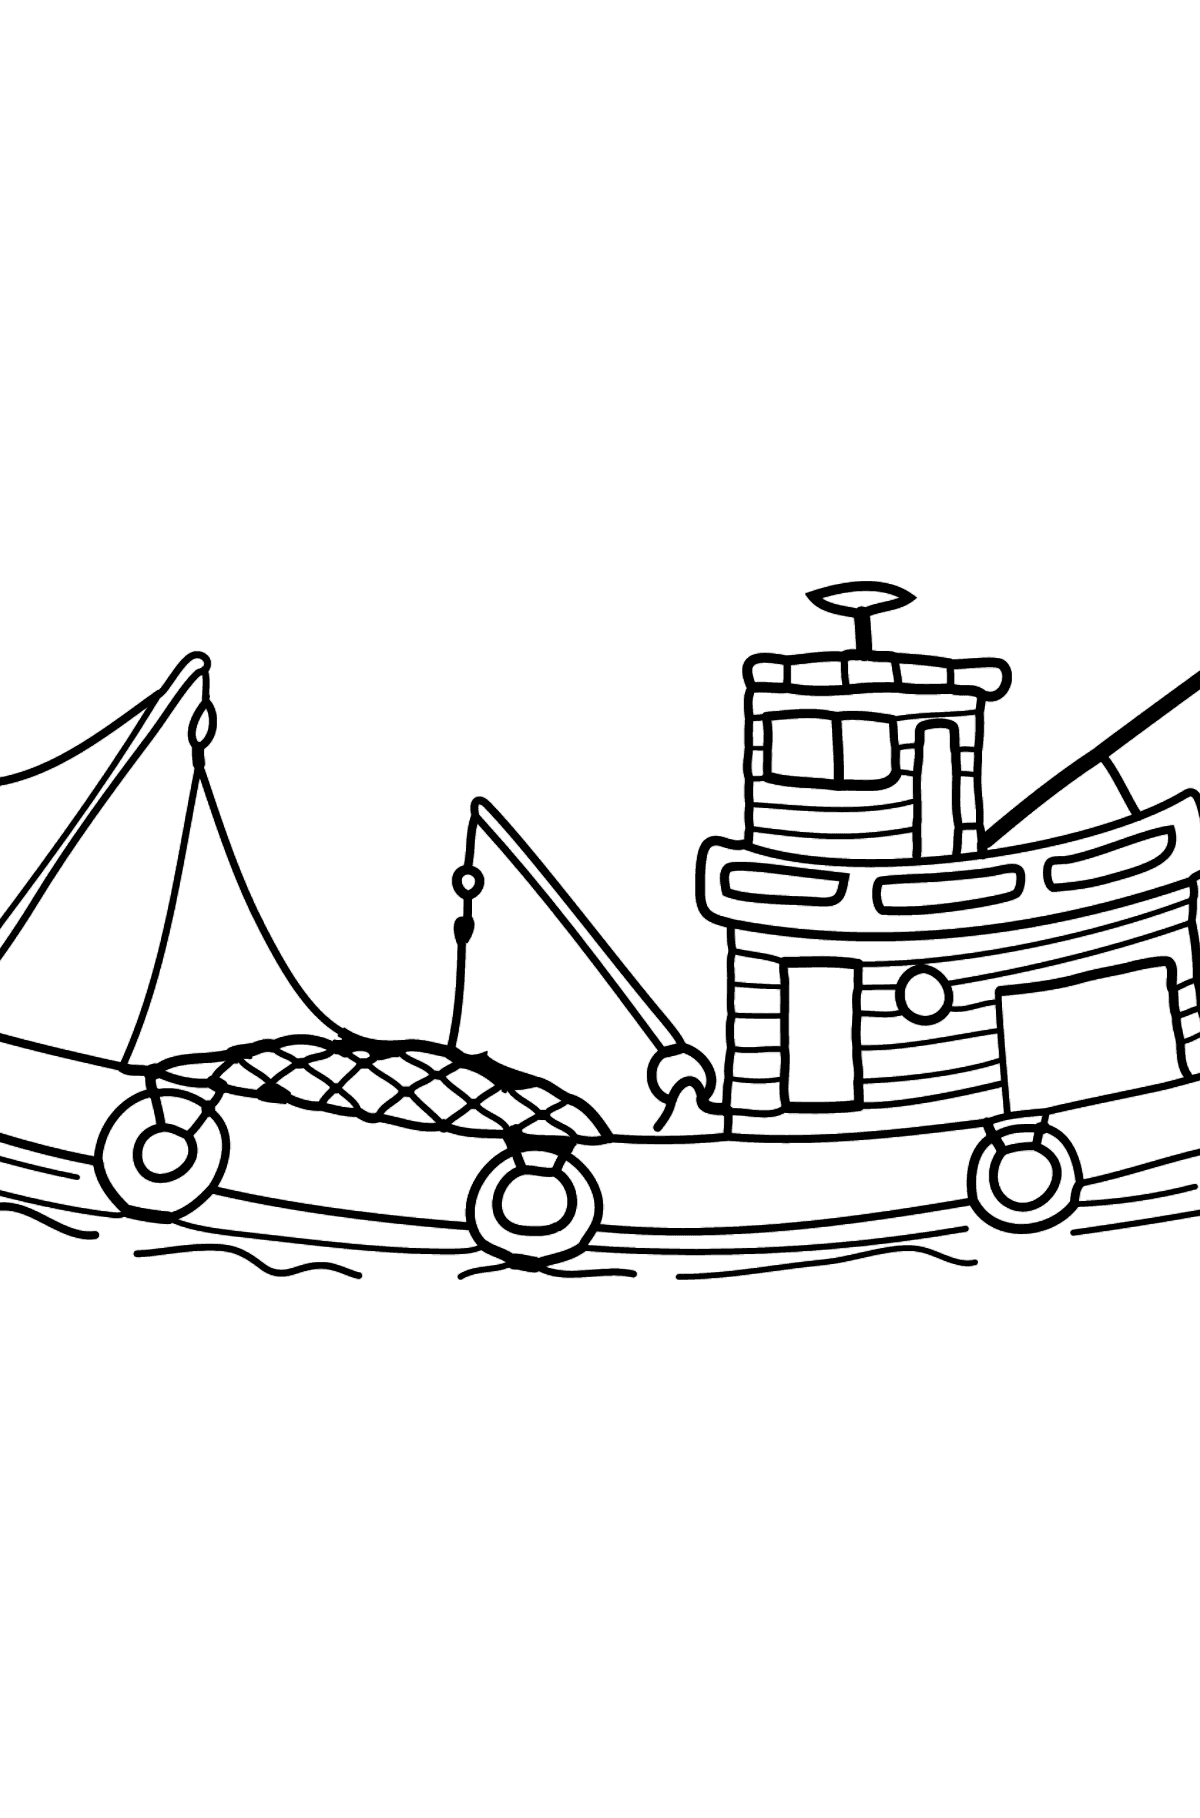 Coloriage - Un bateau de pêche - Coloriages pour les Enfants